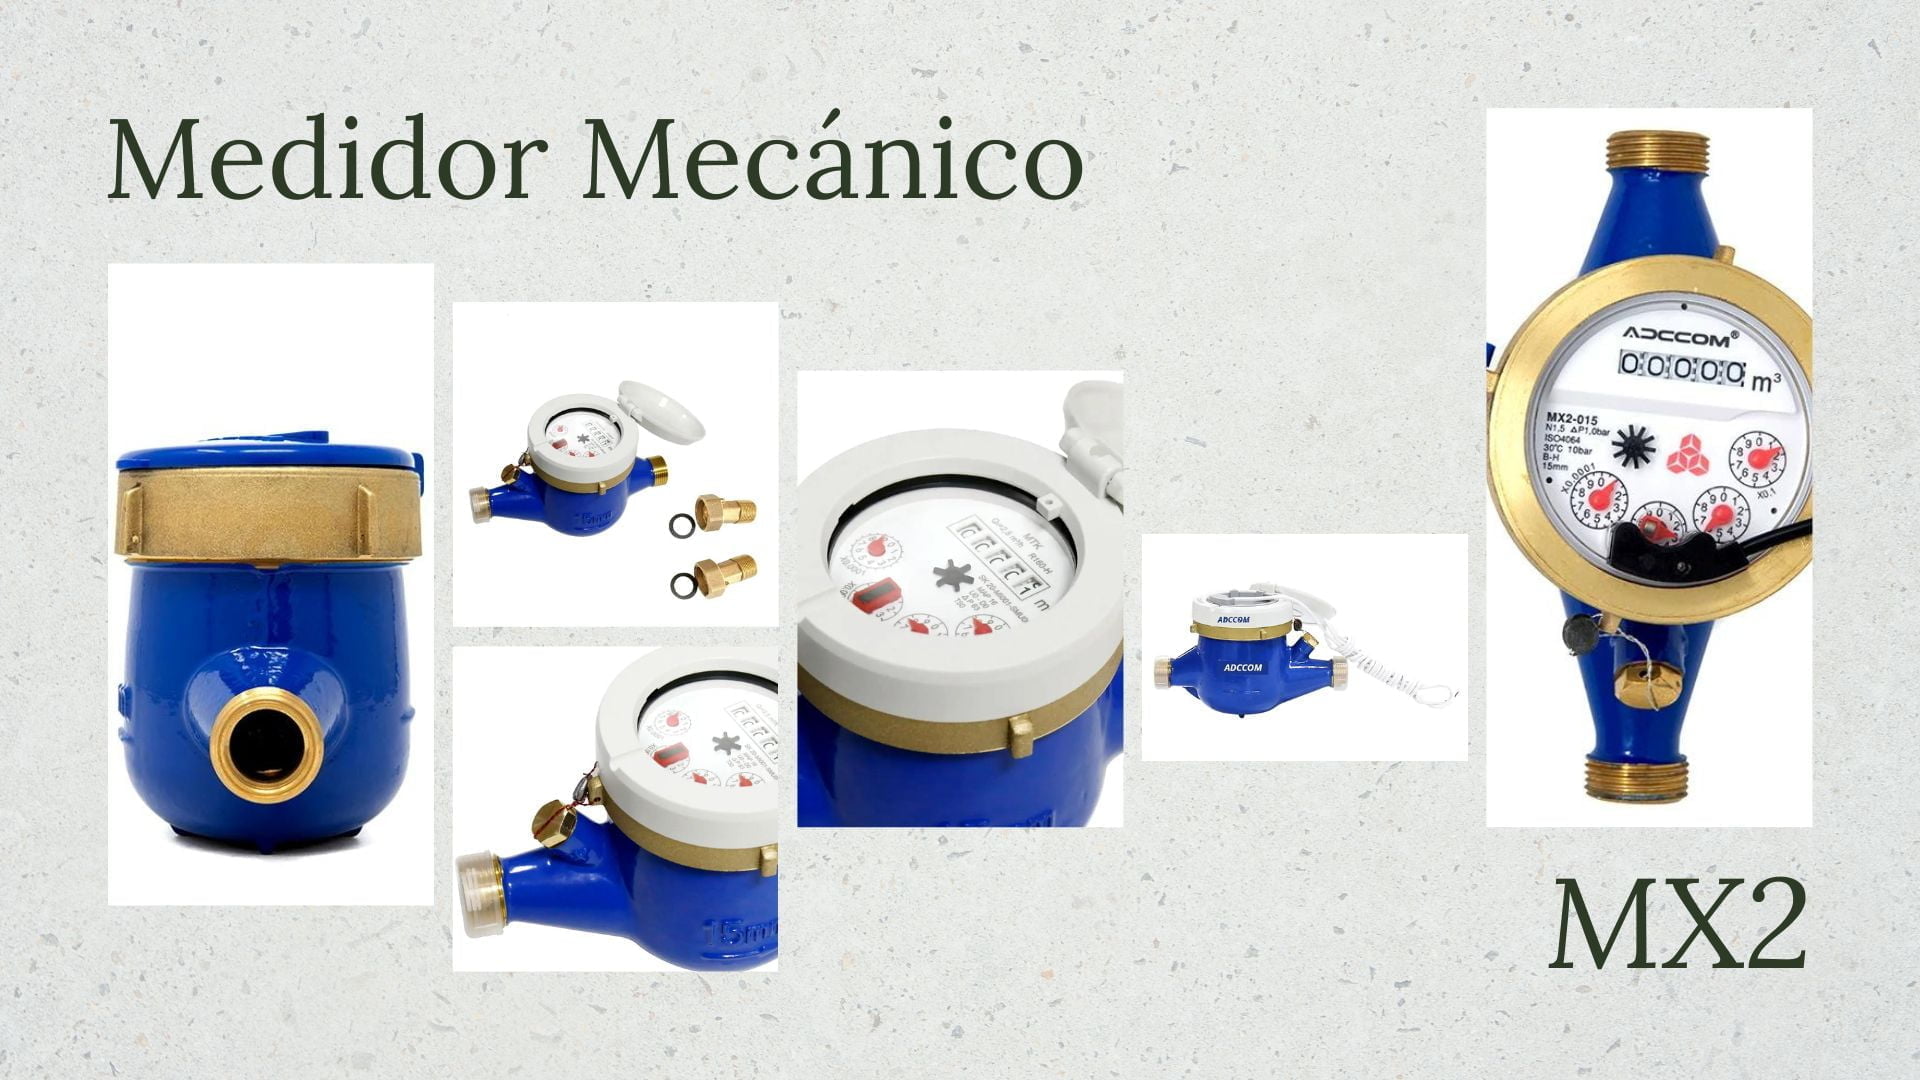 Medidorn Mecánico MX2